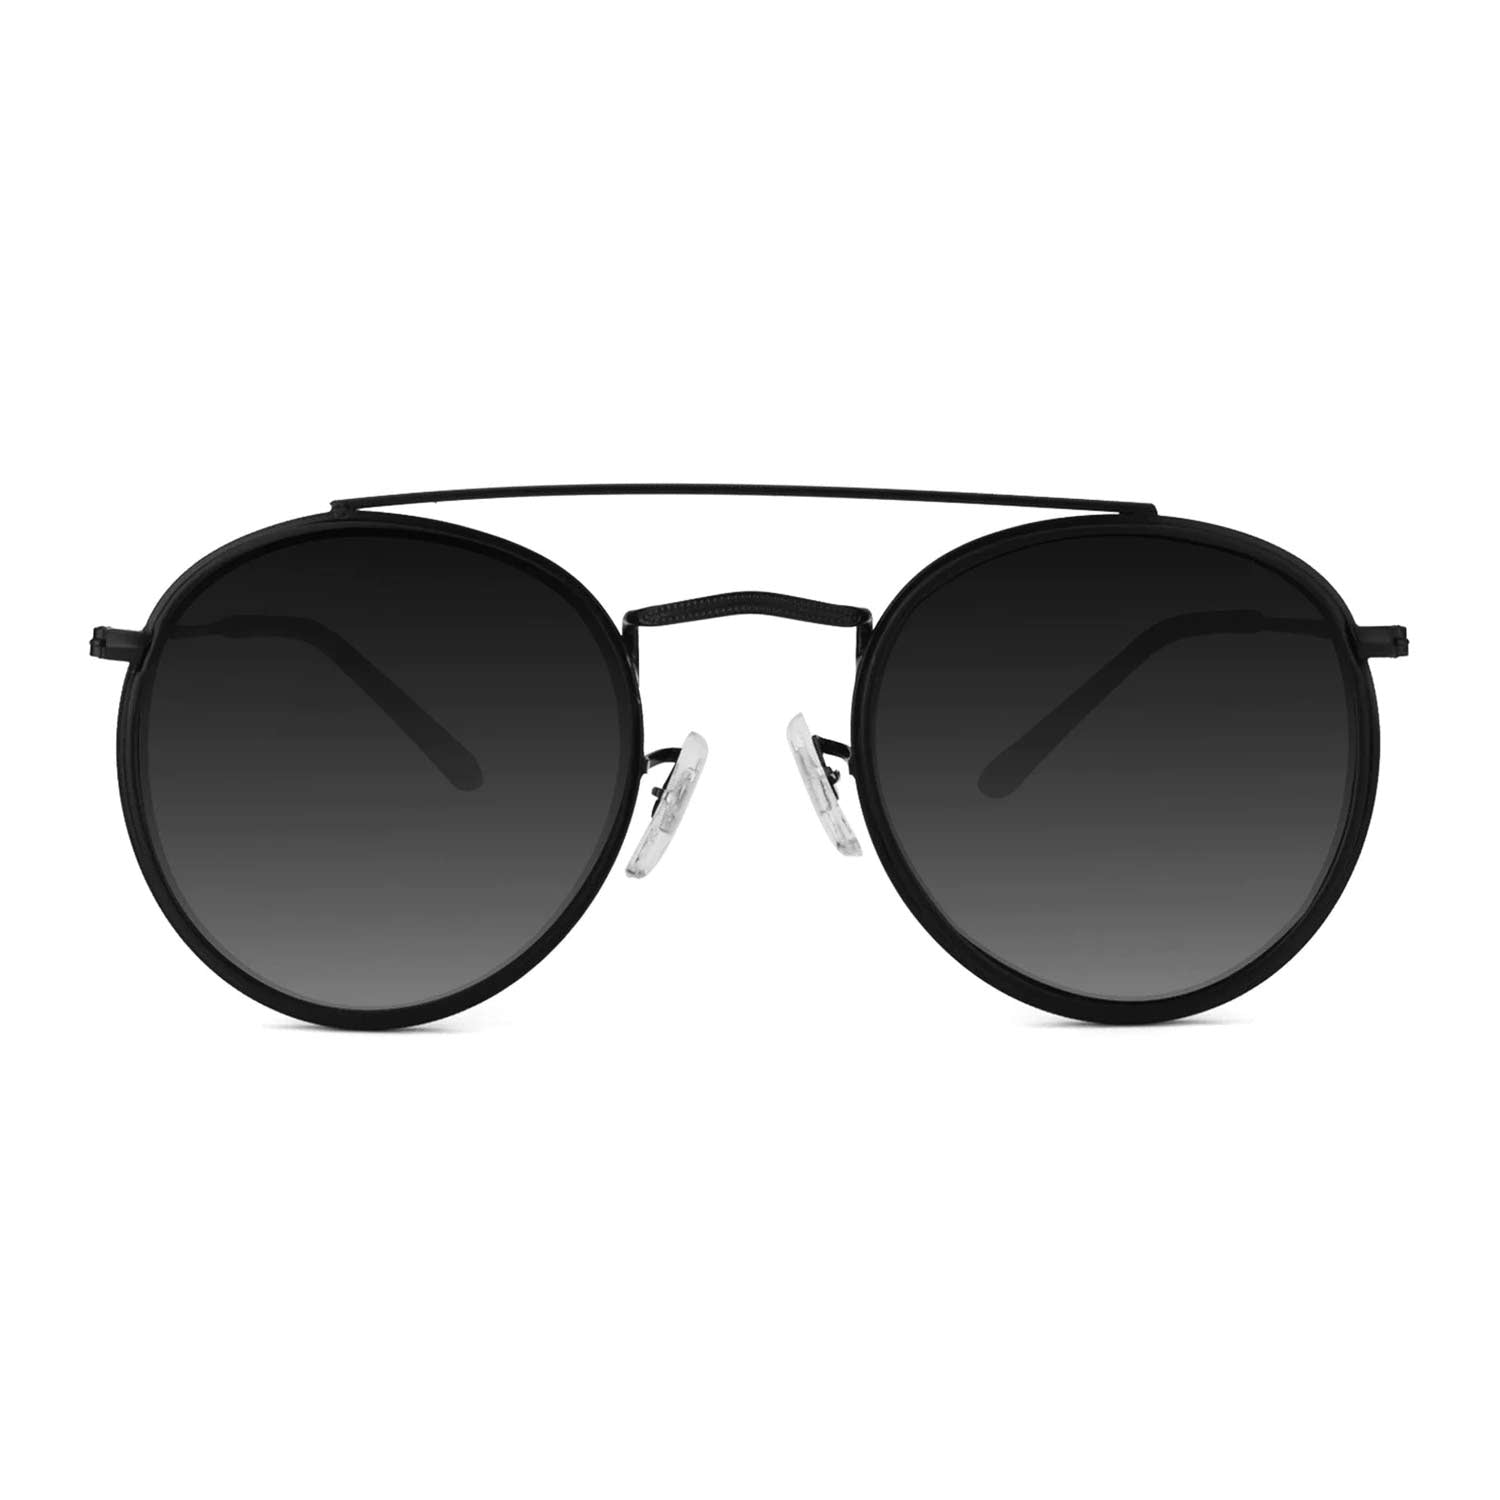 James - Sunglasses | ELKLOOK